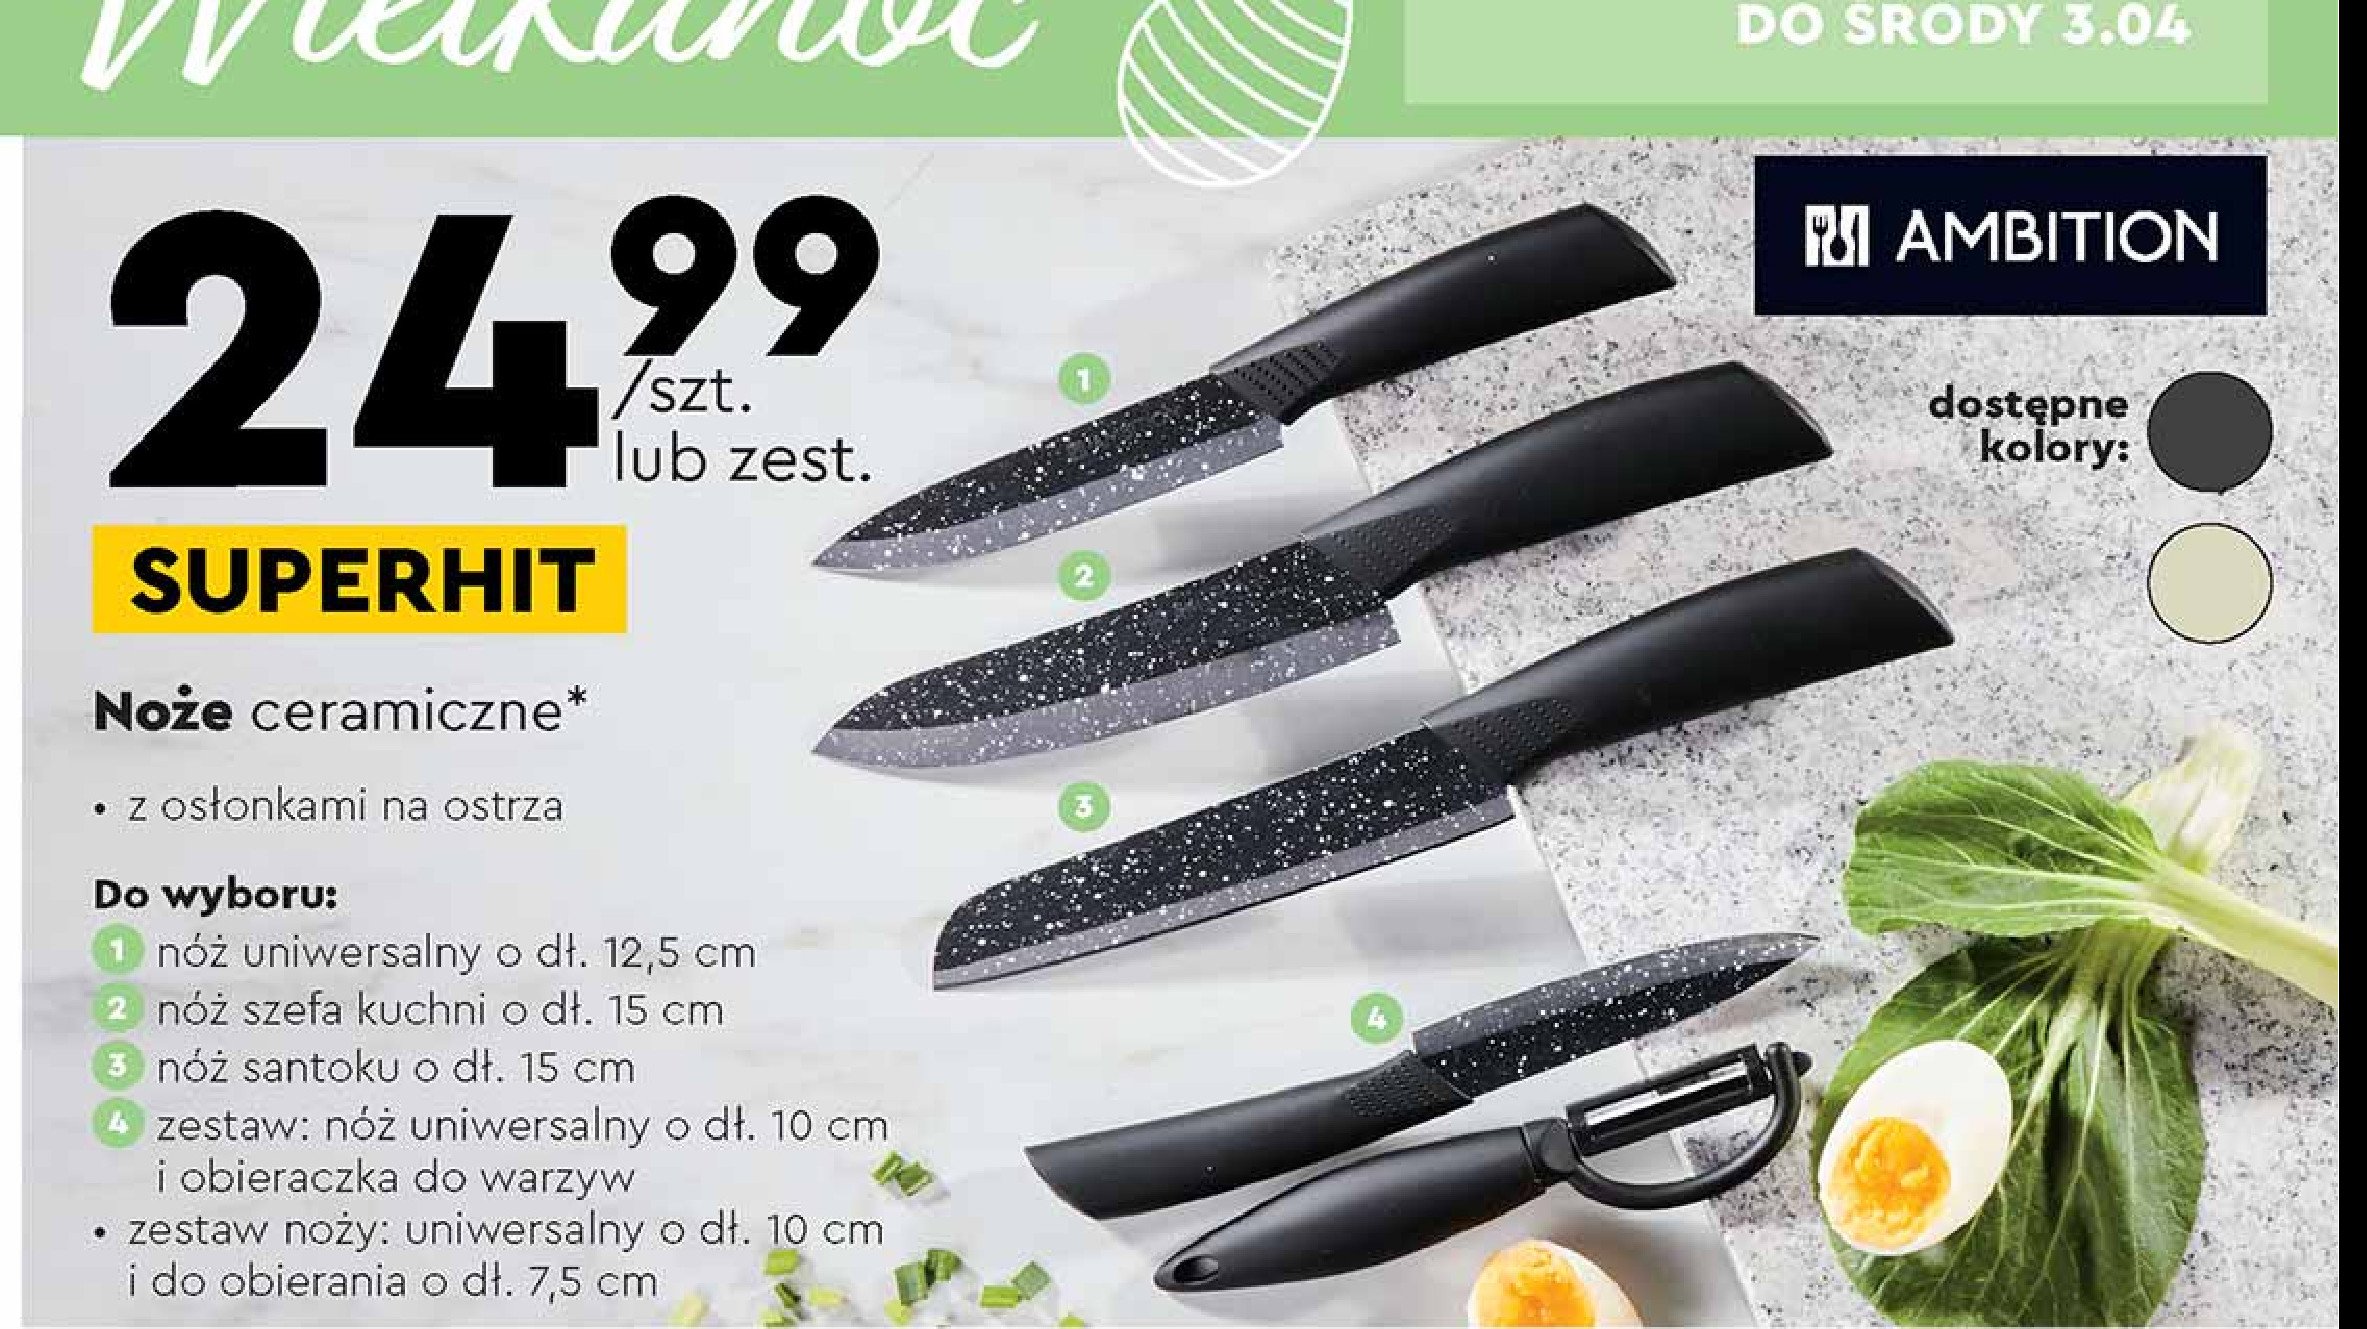 Nóż uniwersalny 10 cm + nóż do warzyw 7.5 cm Ambition promocja